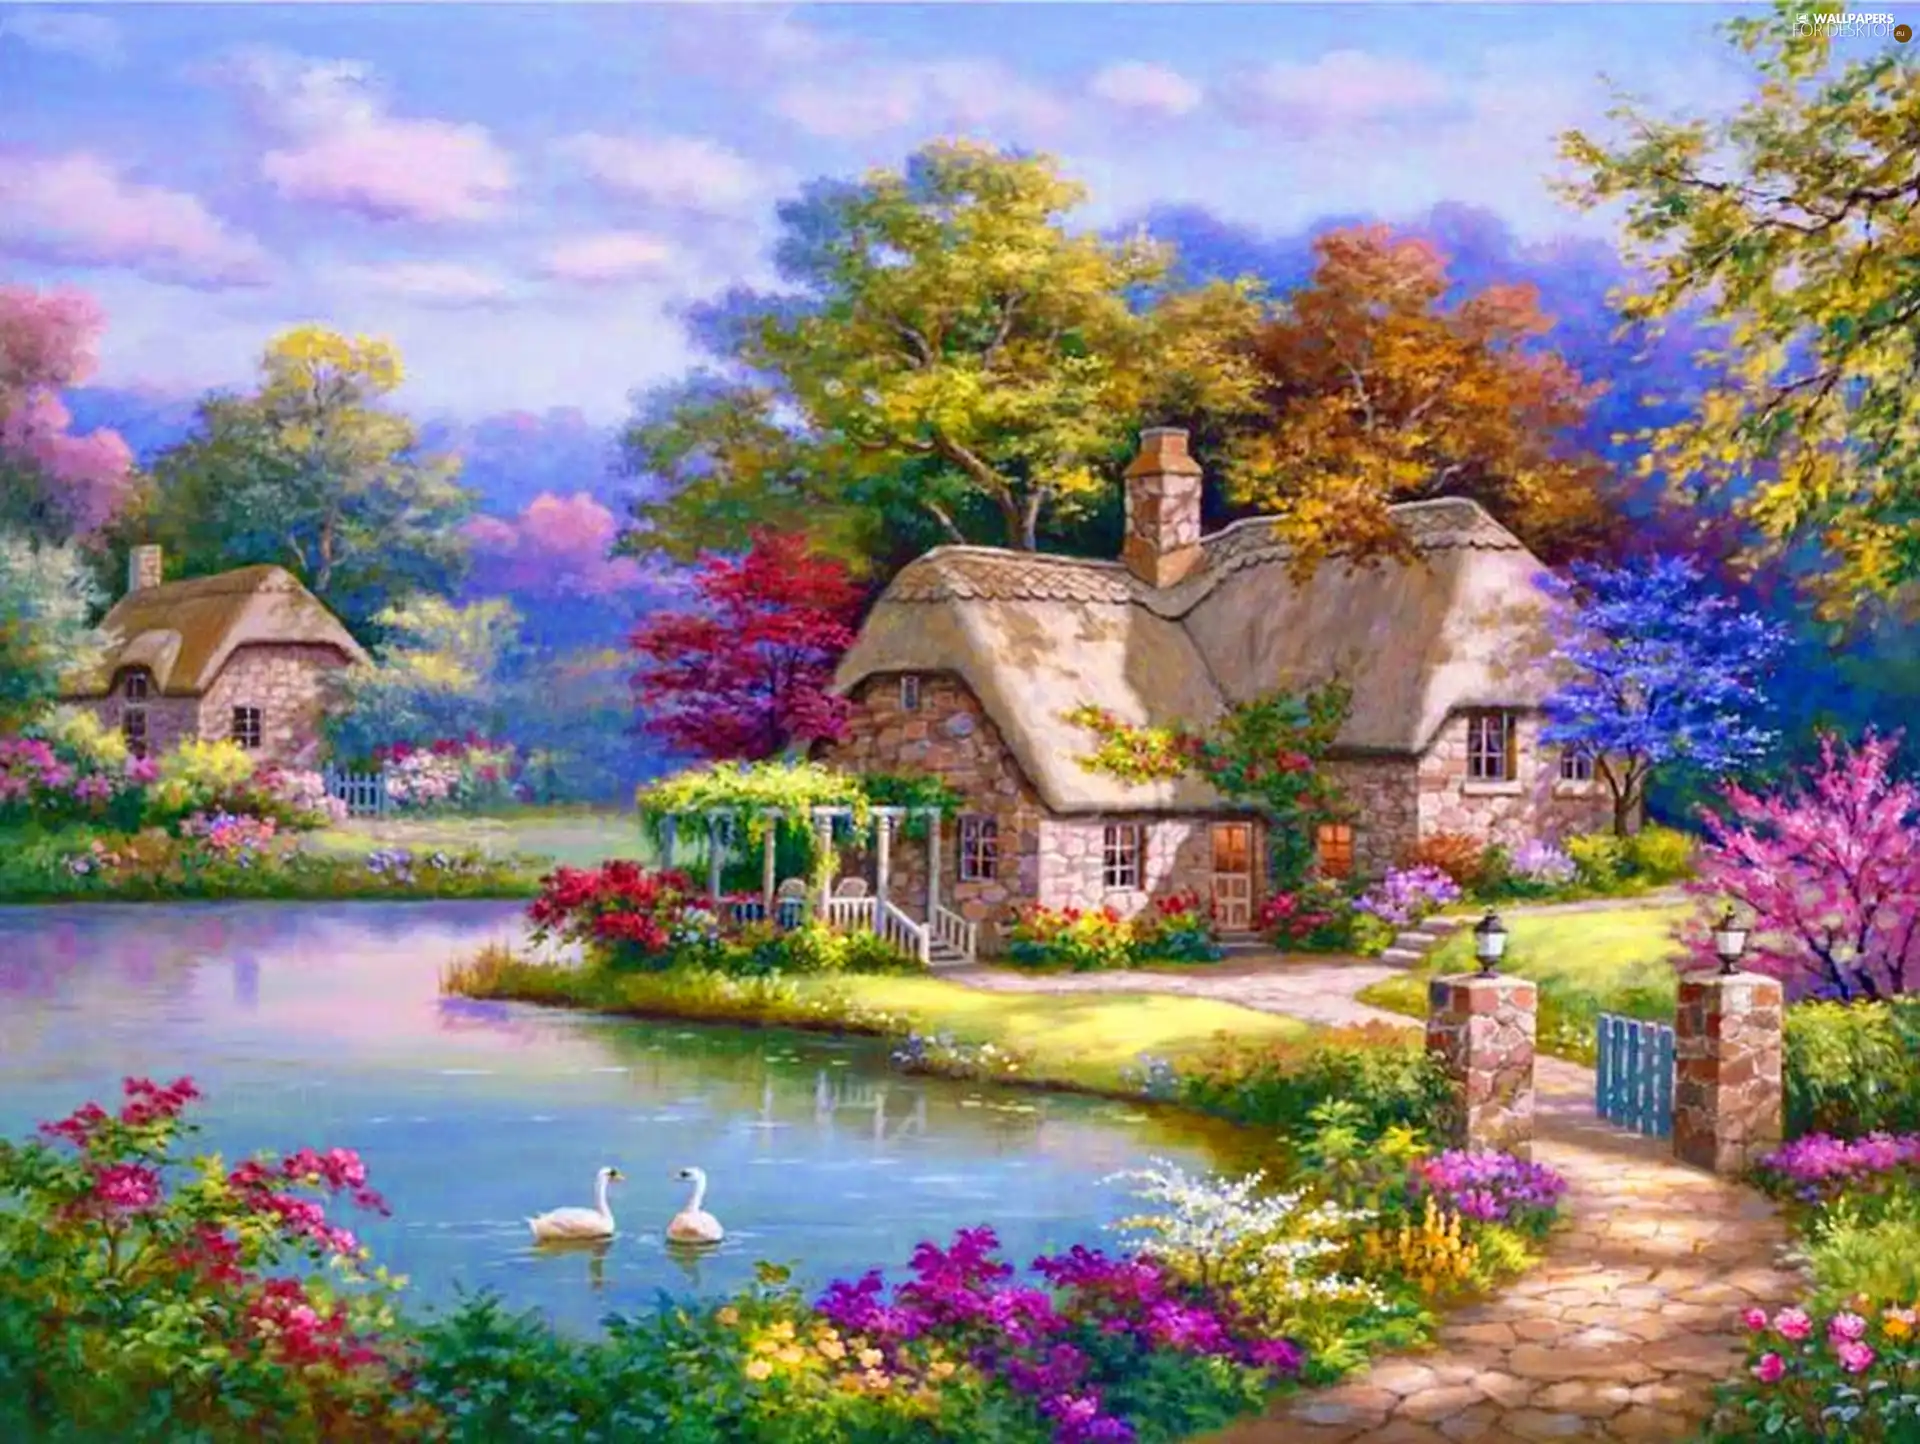 Flowers, Sung Kim, lake, Pond - car, house